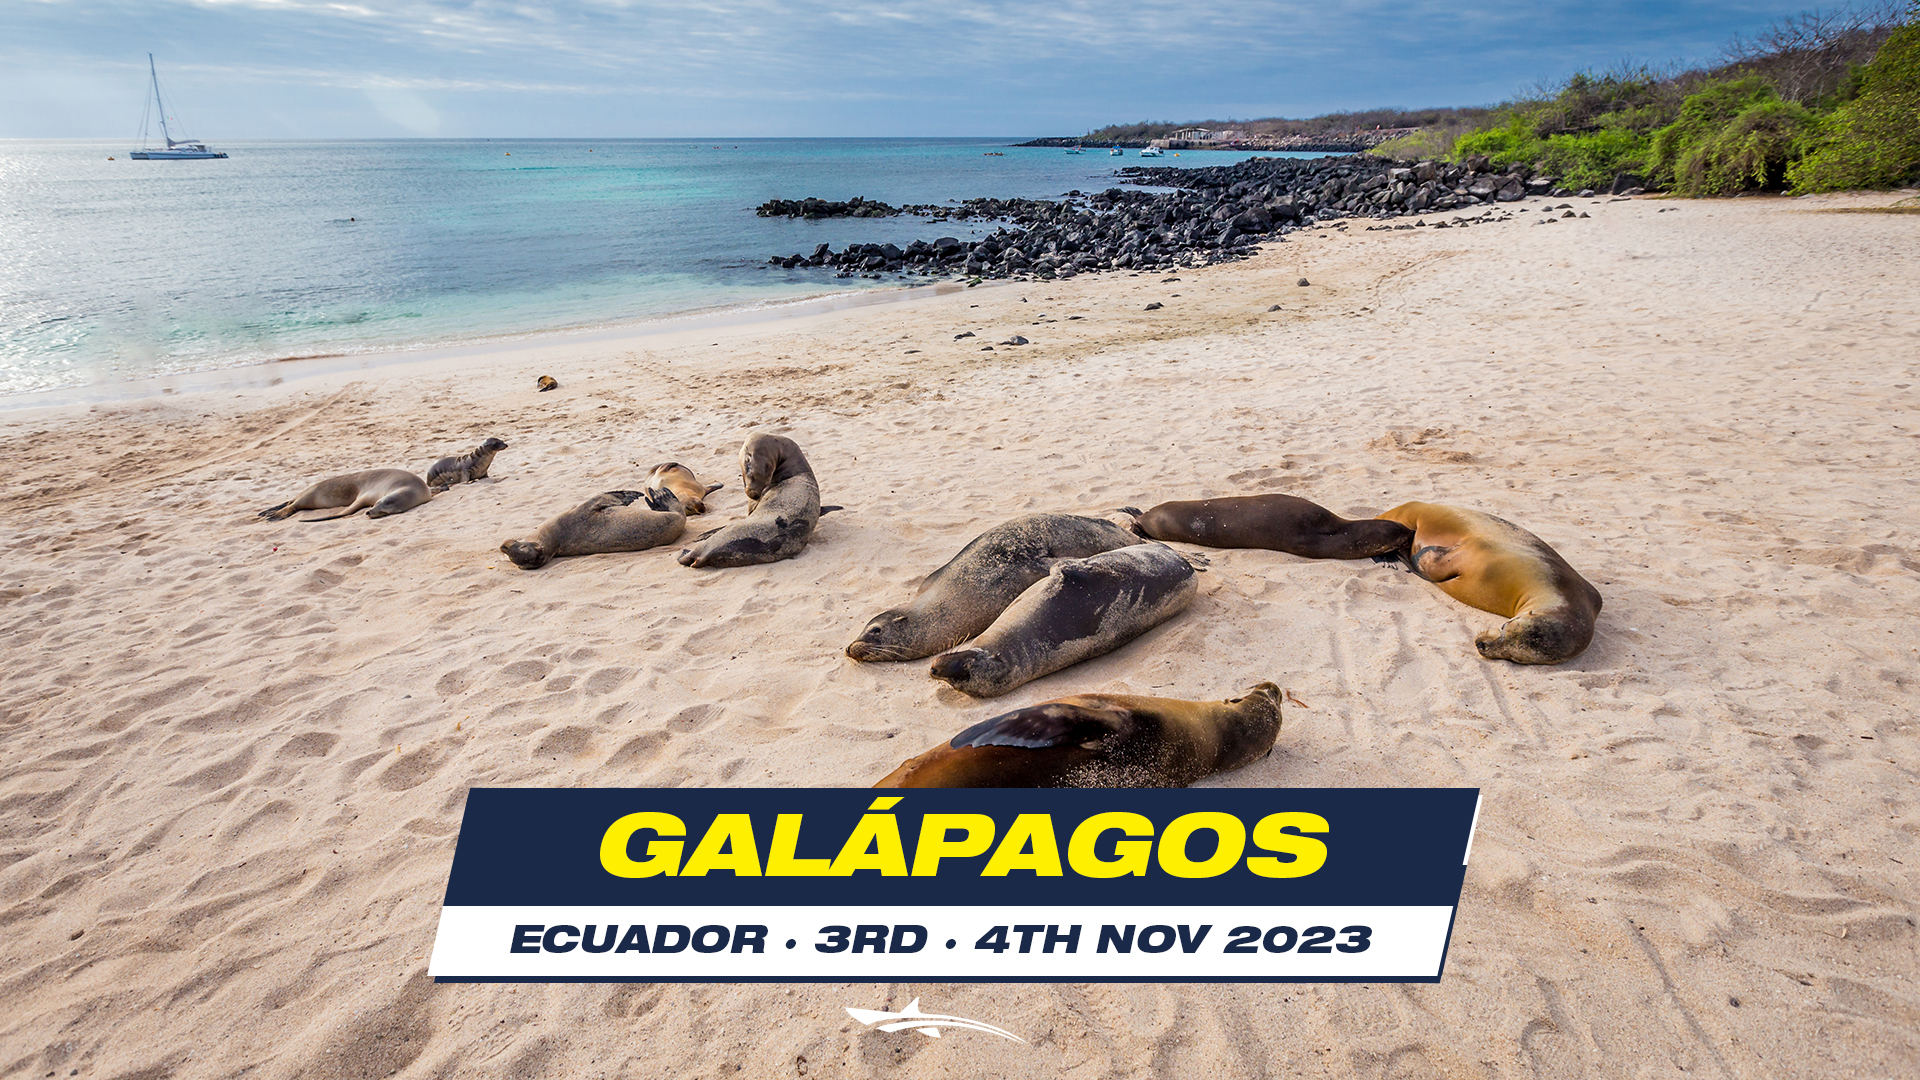 OCEANMAN GALÁPAGOS - ECUADOR 2023